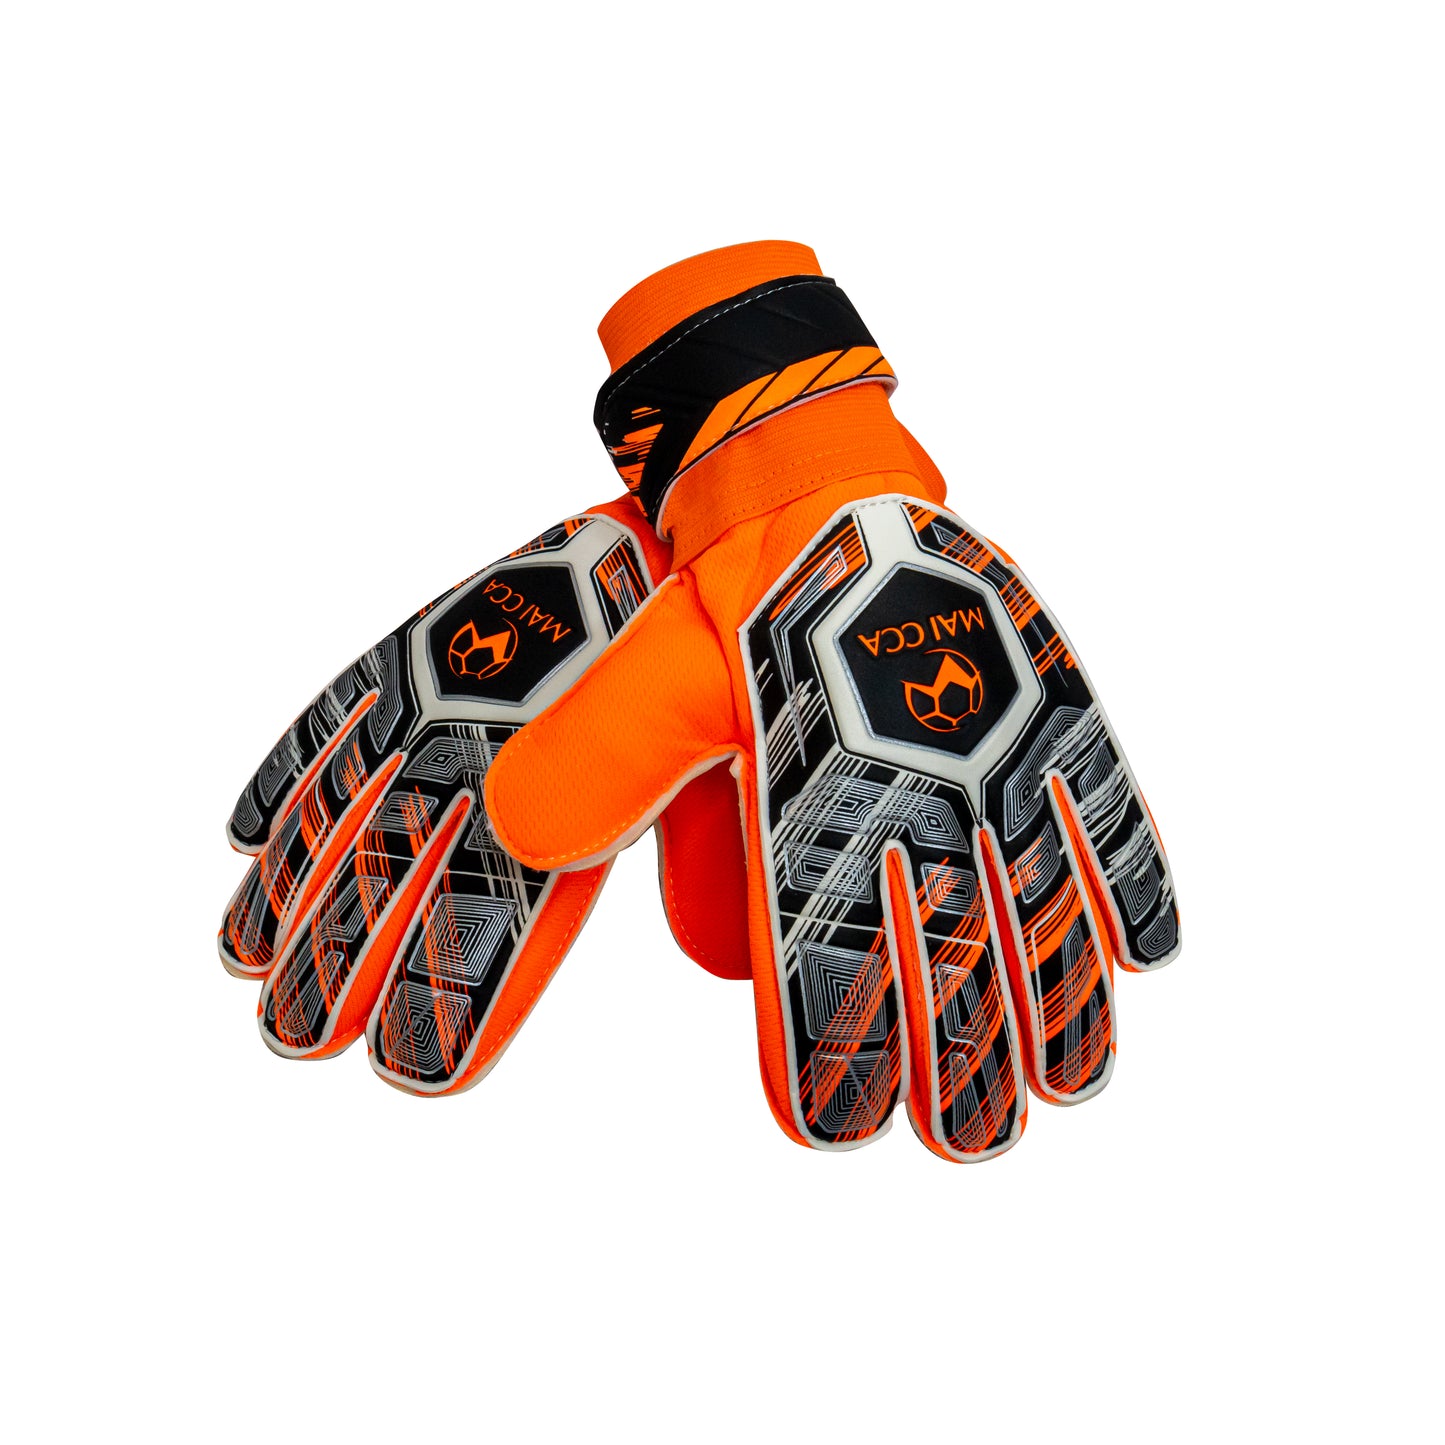 Performance Goalkeeper Gloves